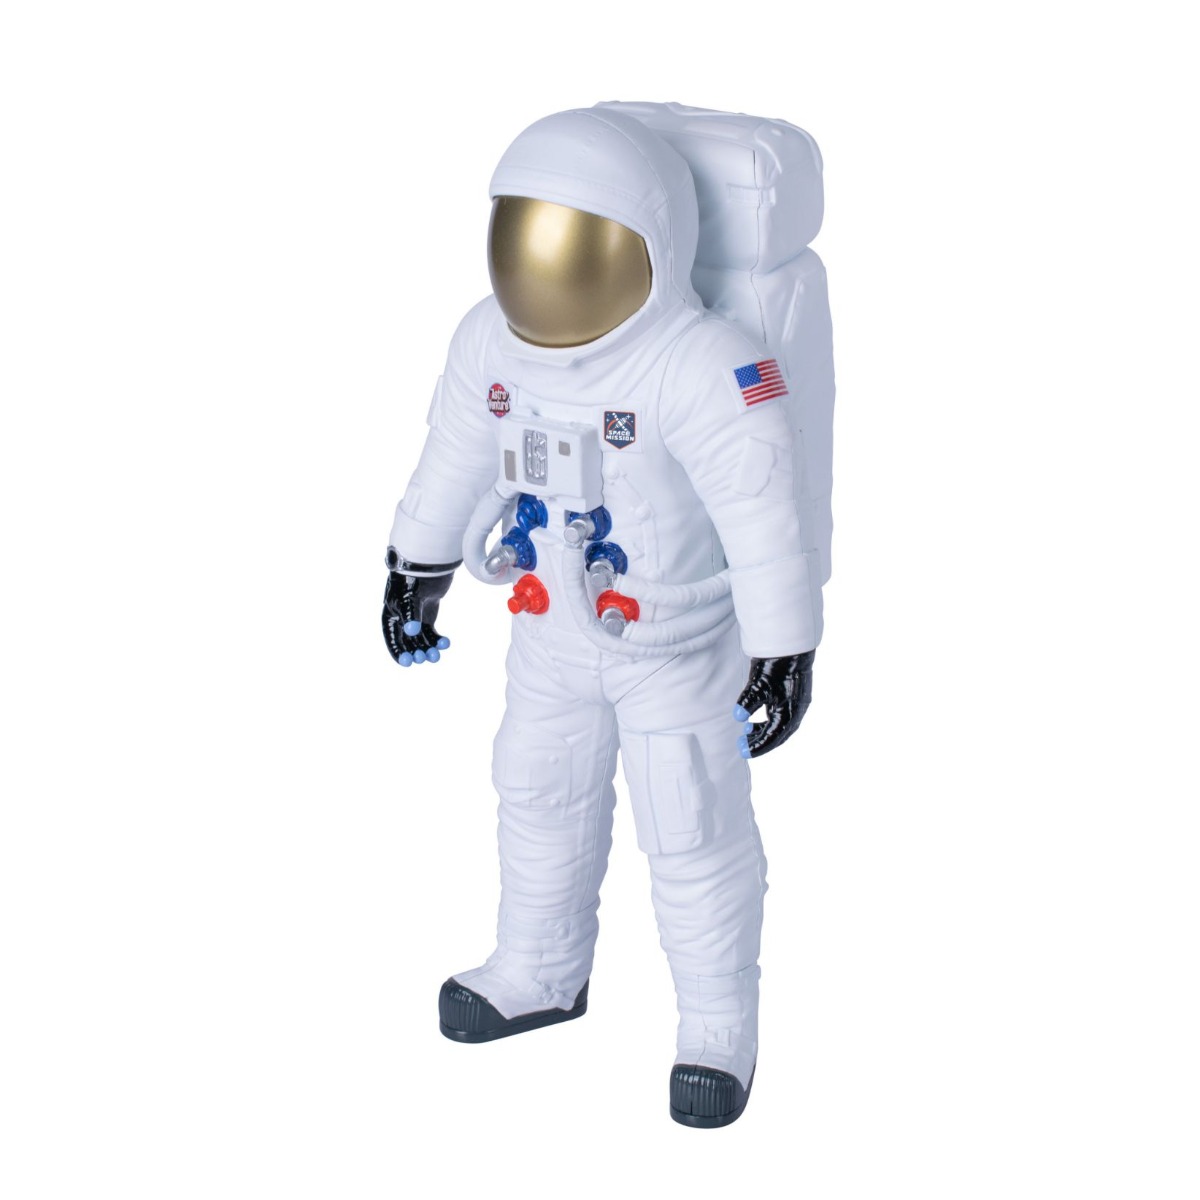 Figurina astronaut cu accesorii Astro Venture 25 cm